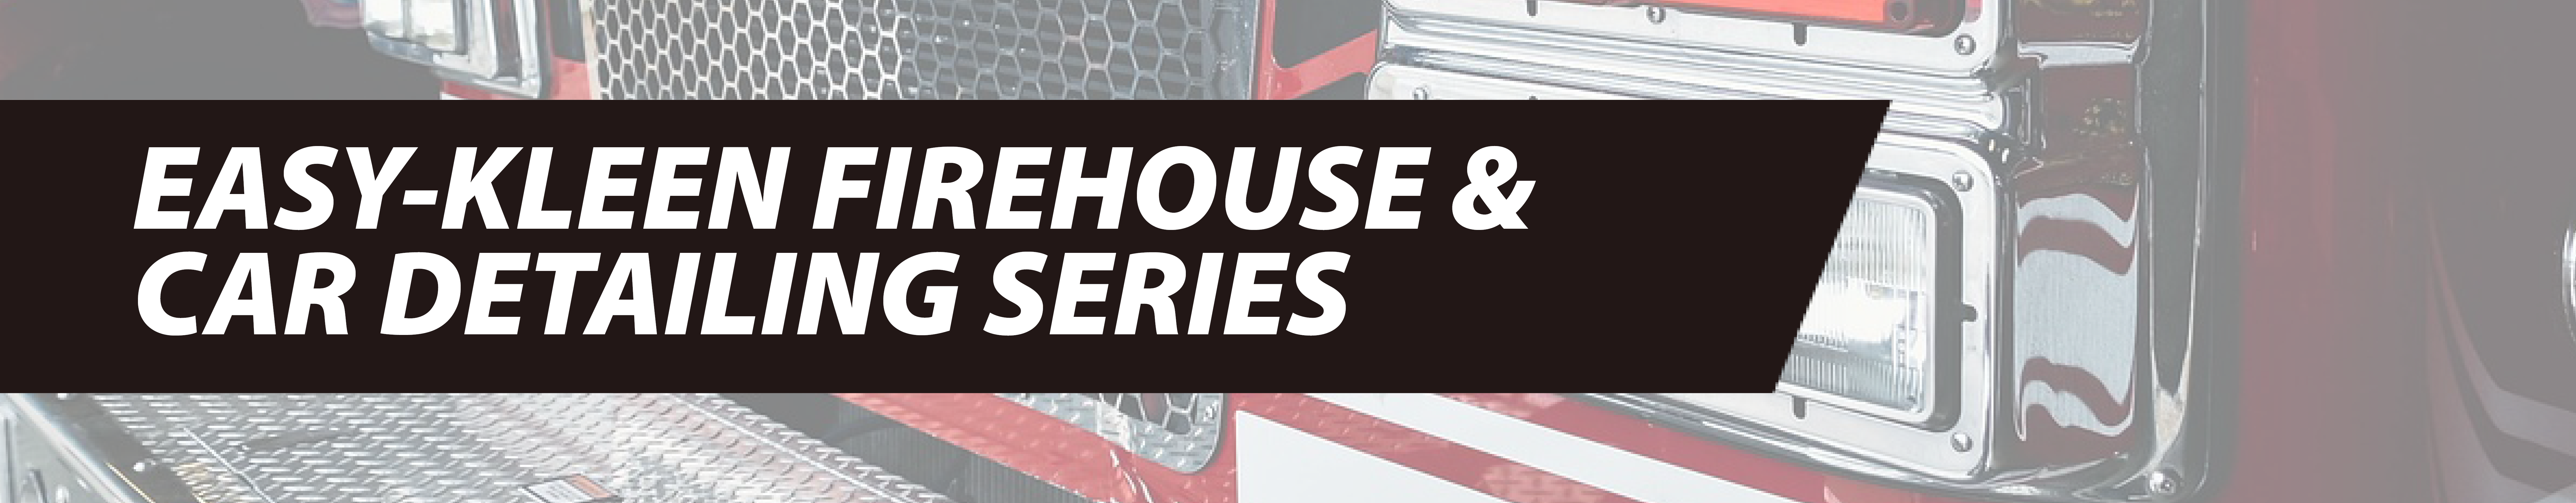 Easy-Kleen Firehouse & Car Detailing Series Header